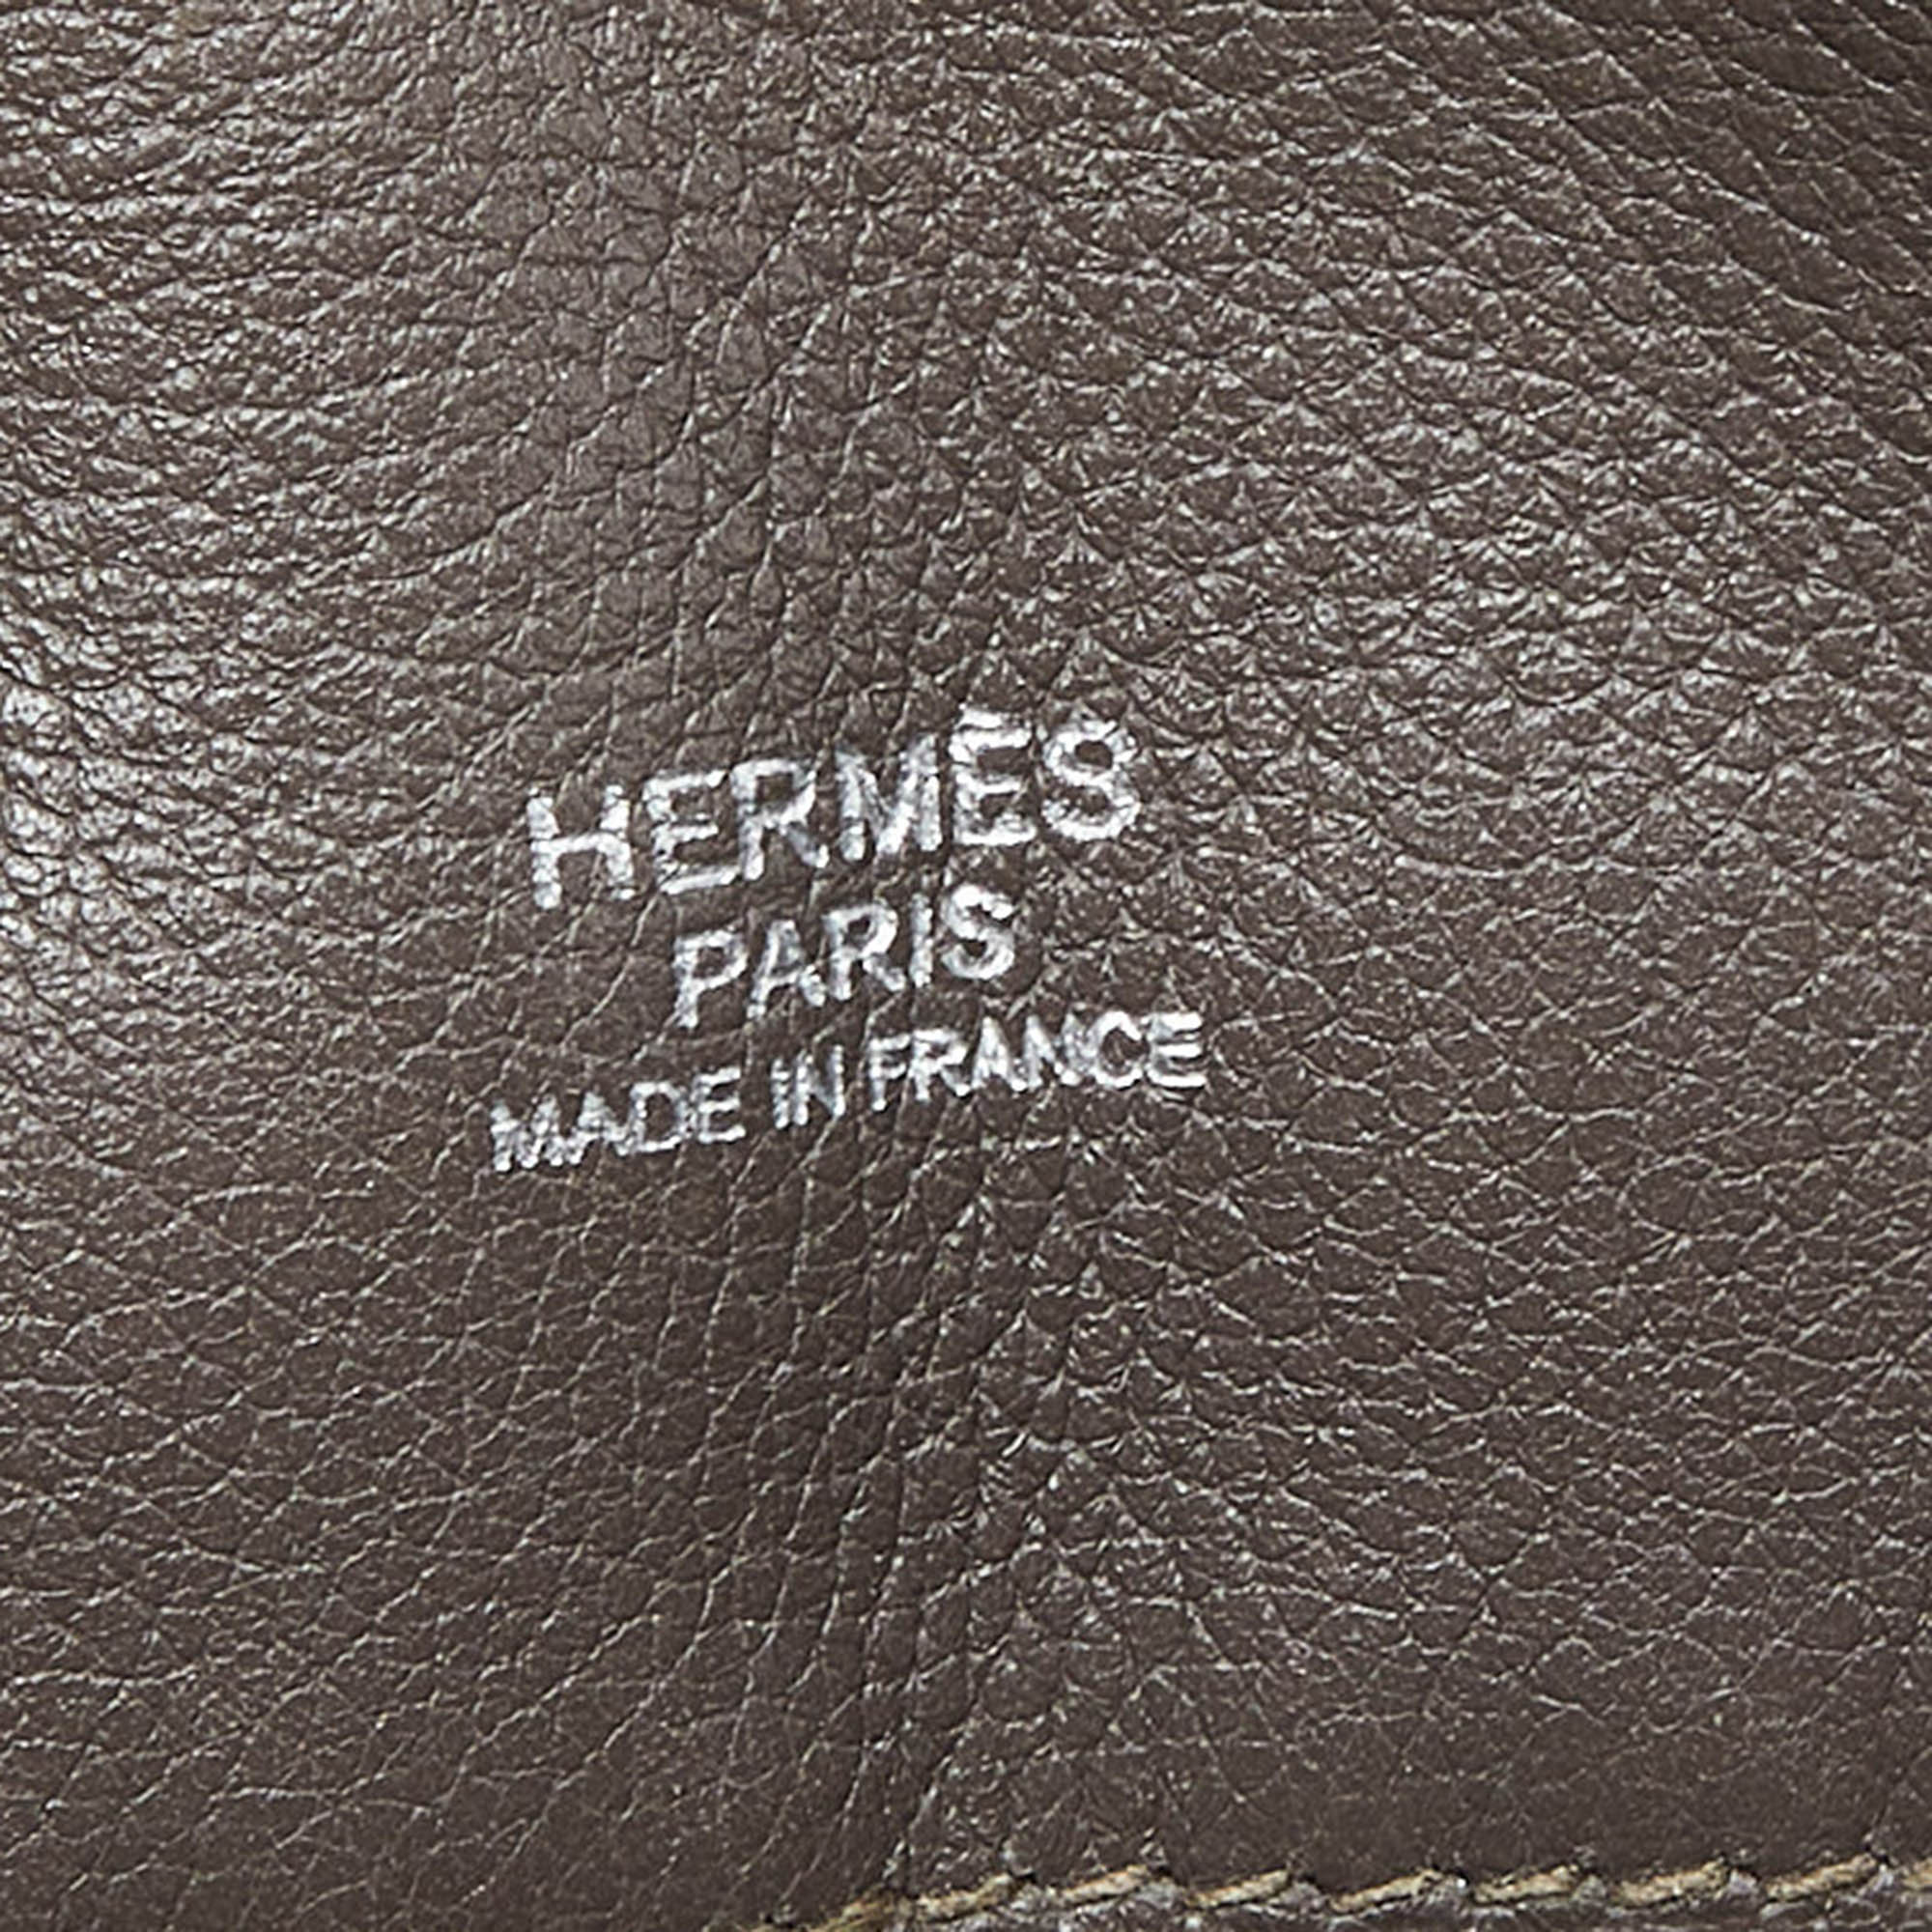 Hermes Etain Swift Leather Berline 21 Bag